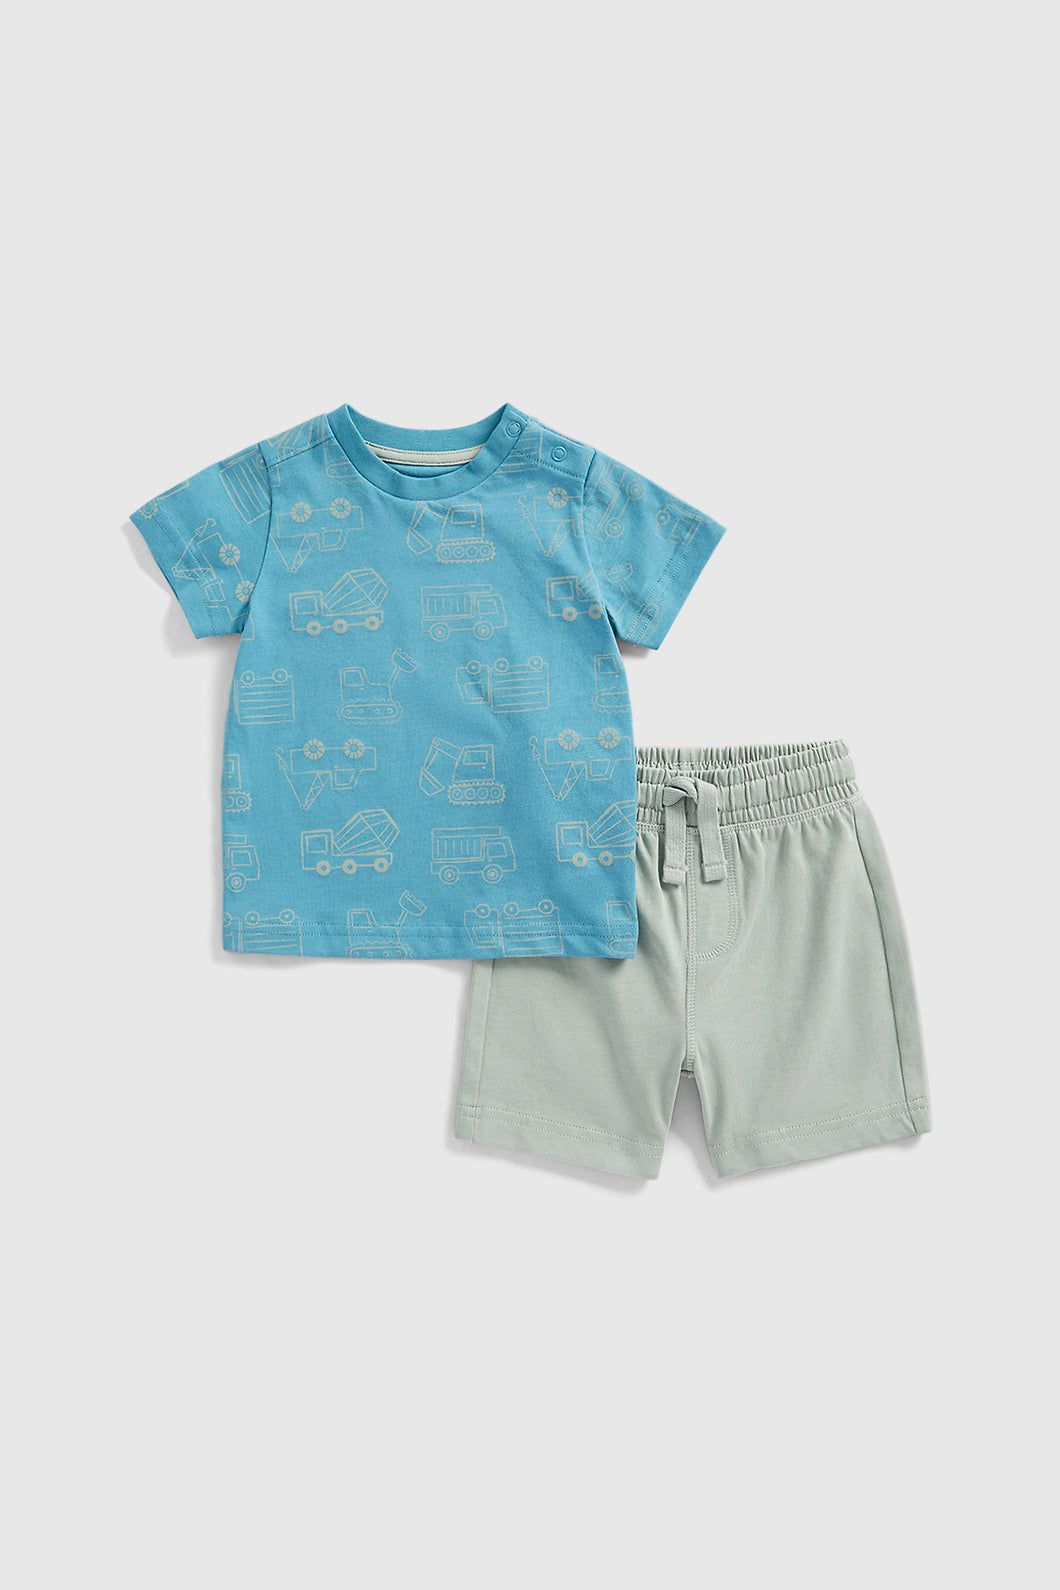 Mothercare Digger Jersey Shorts and T-Shirt Set